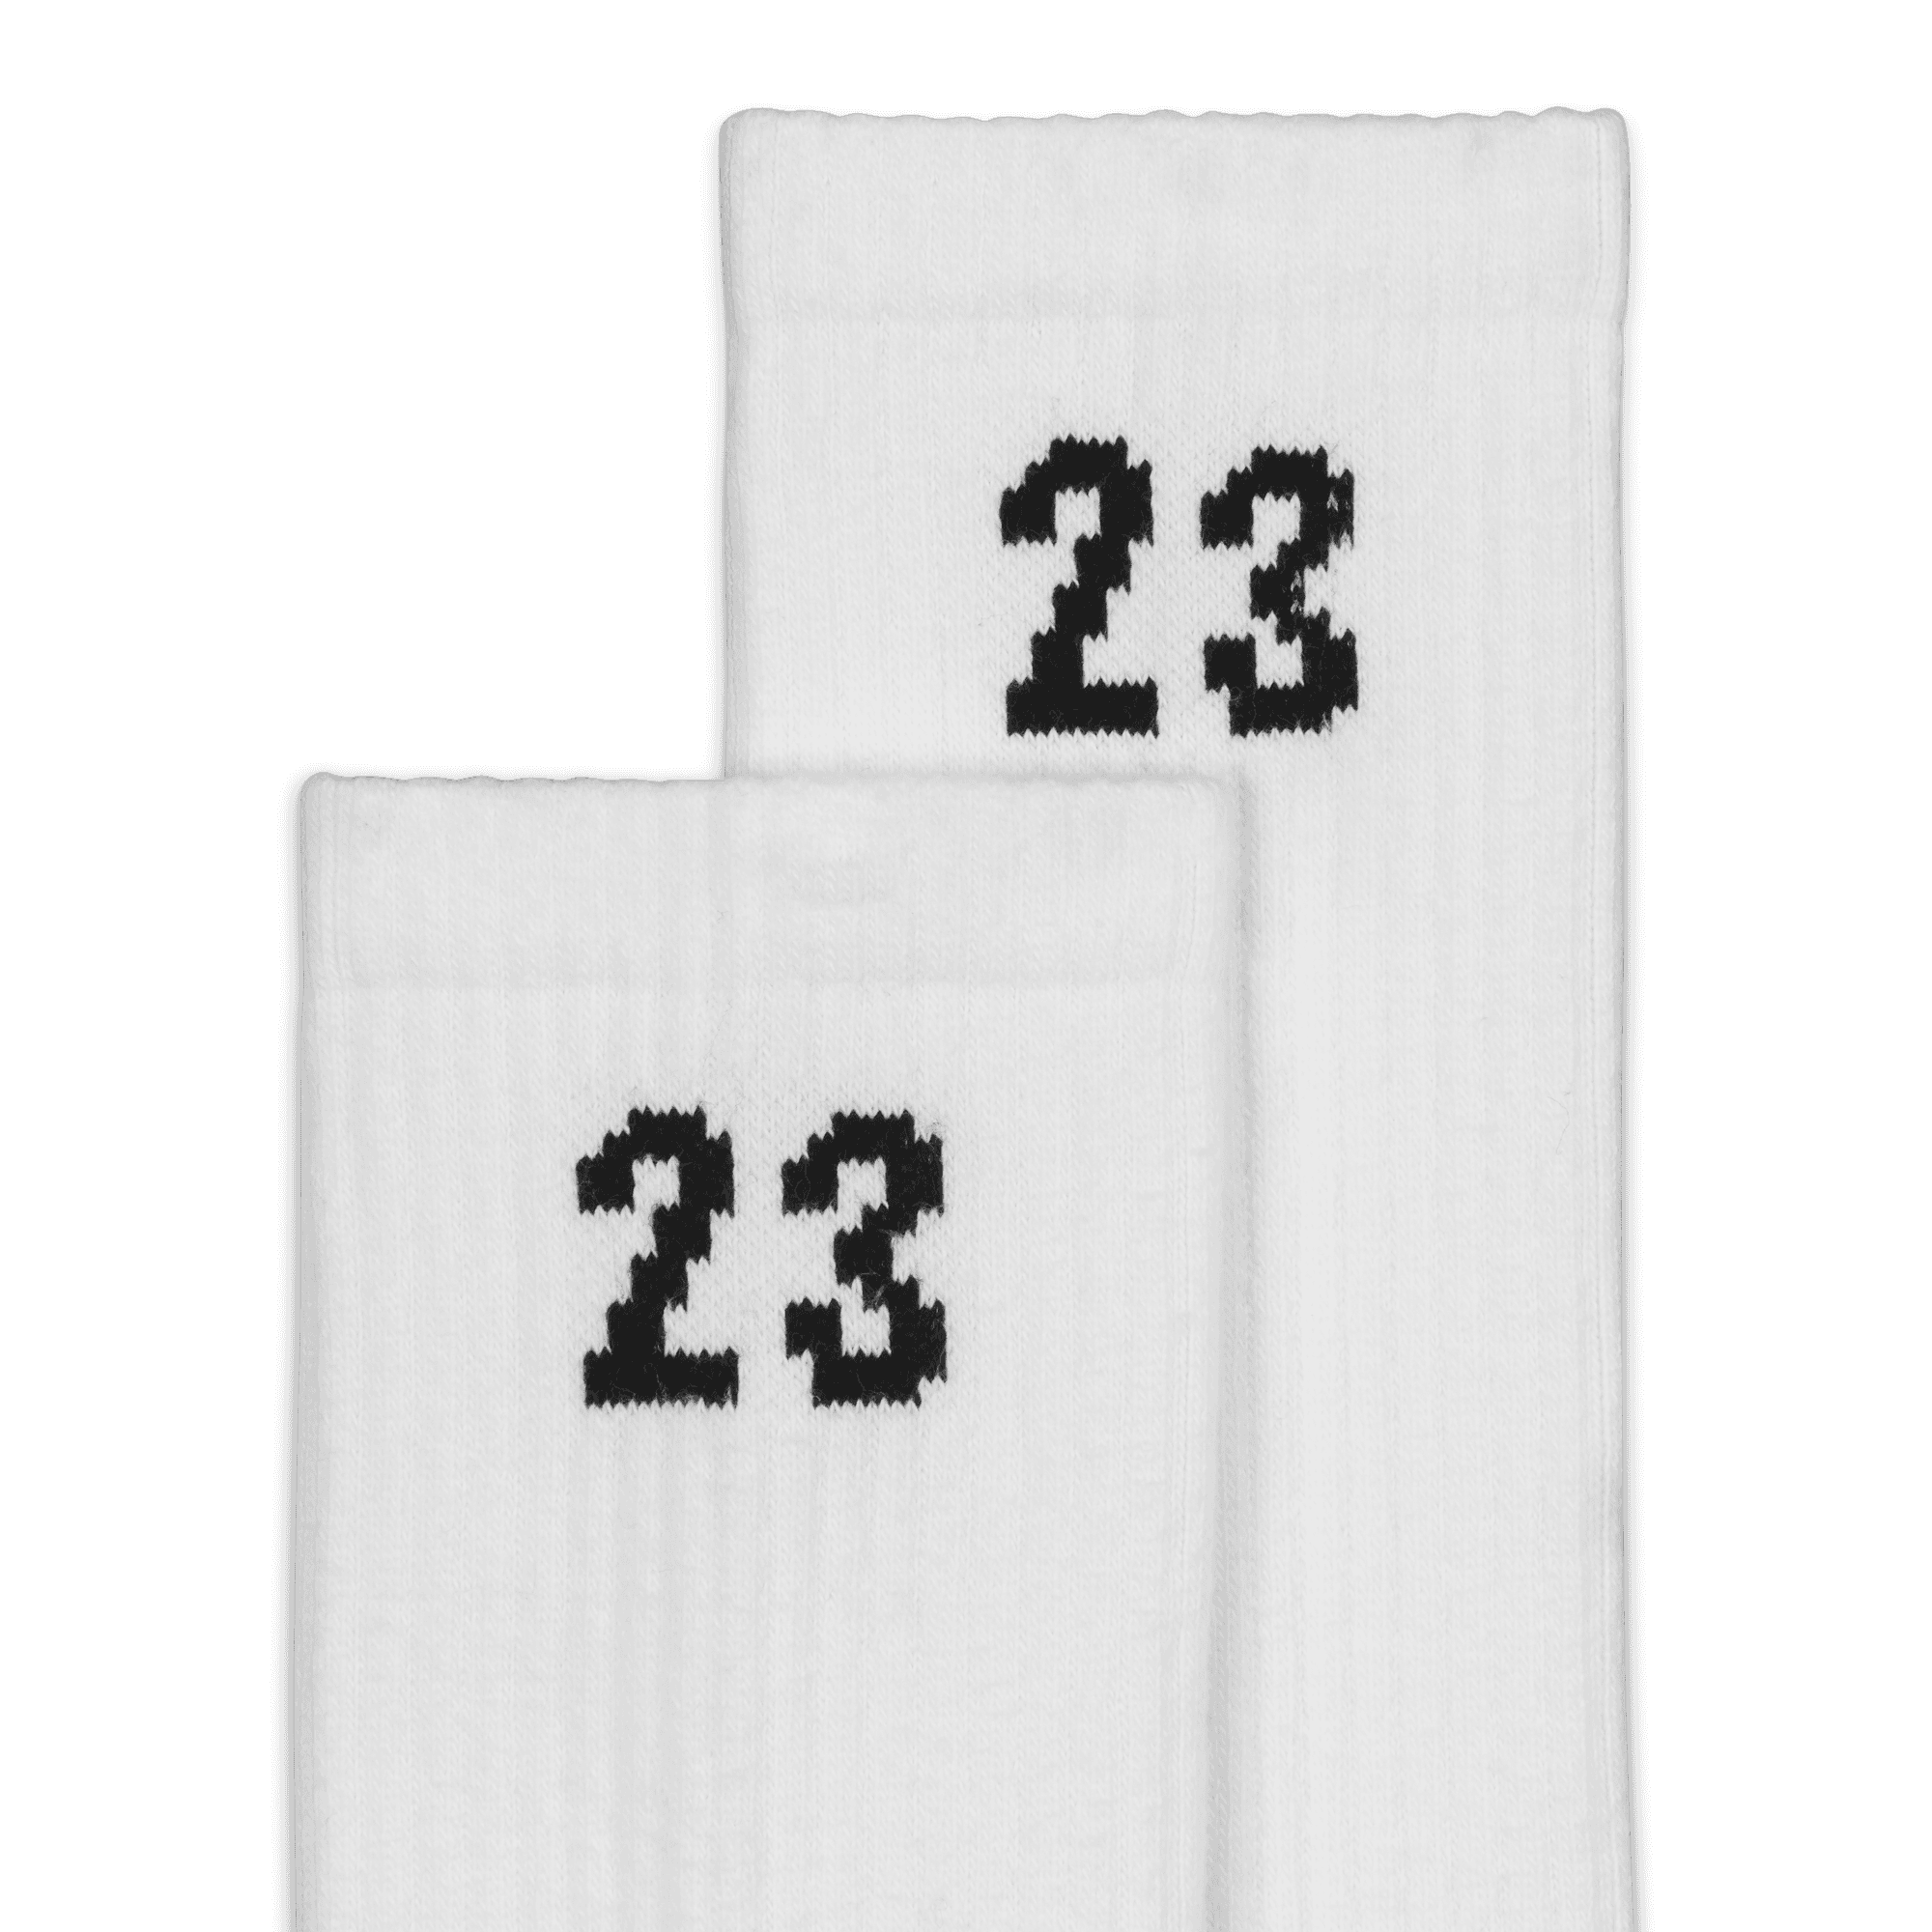 Jordan Essentials Crew Socks (3 Pairs).